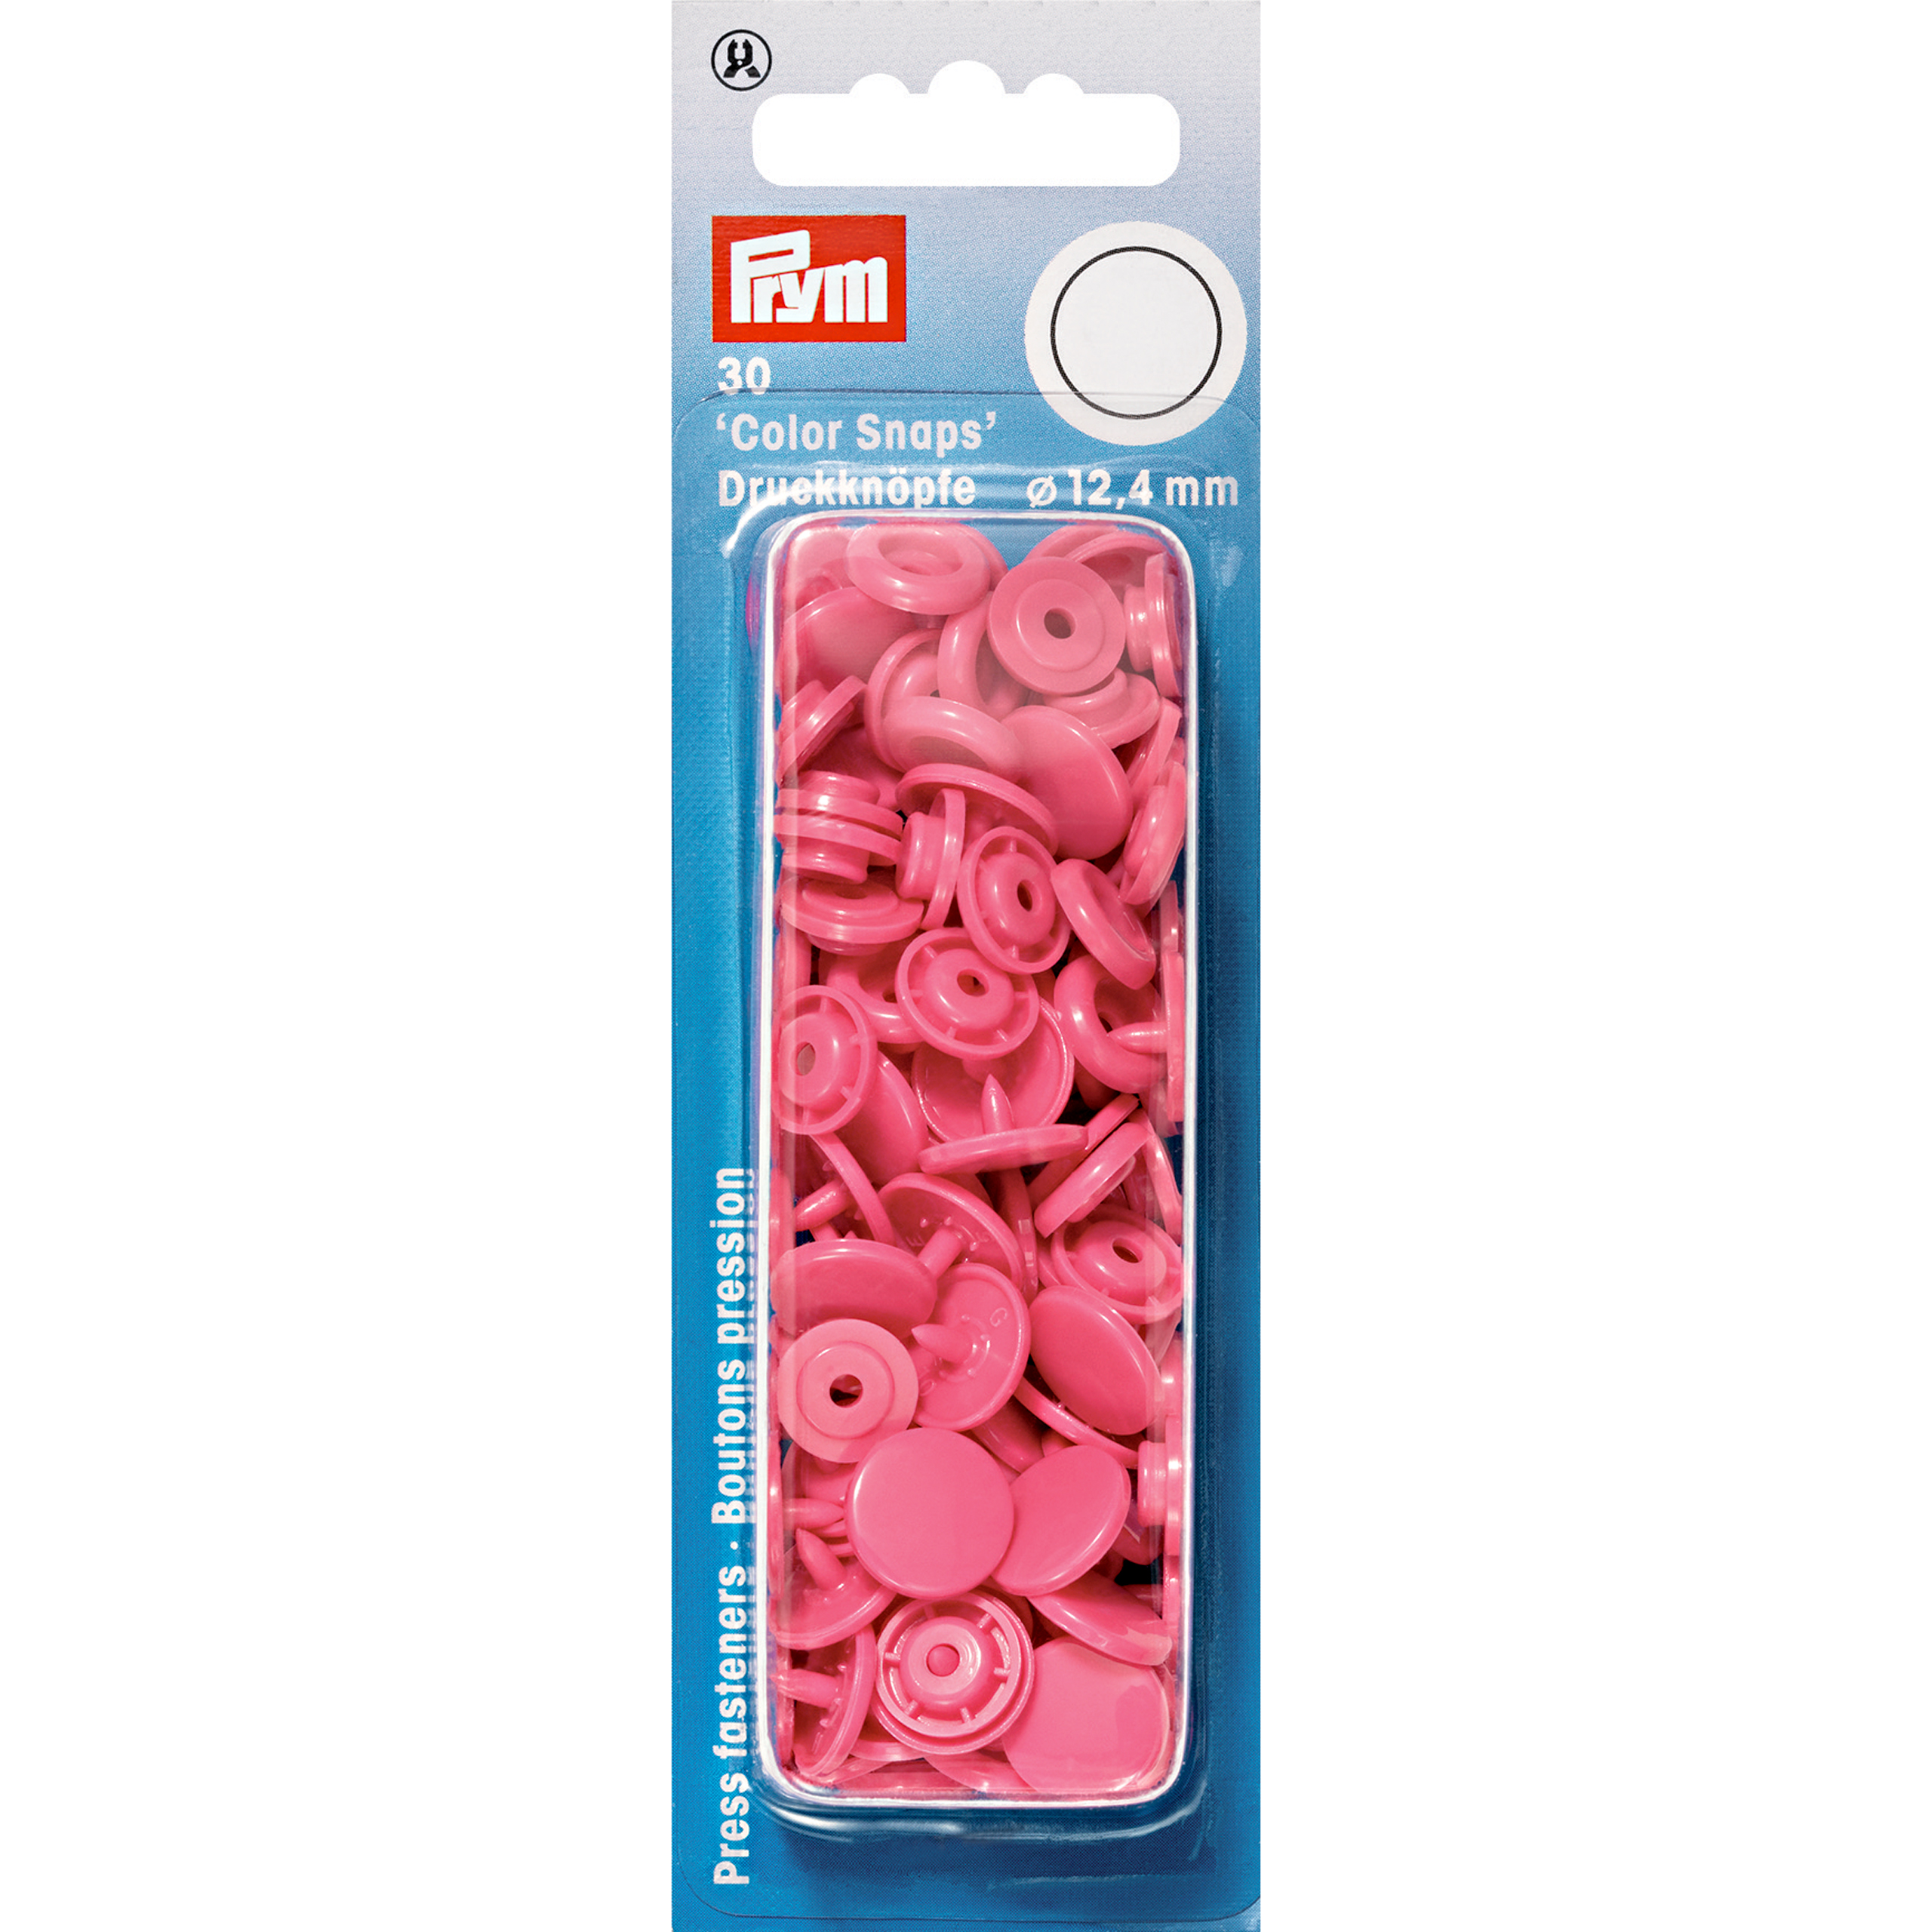 Nähfrei-Druckknöpfe Color Snaps rund 12,4 mm 30 St von Prym pink